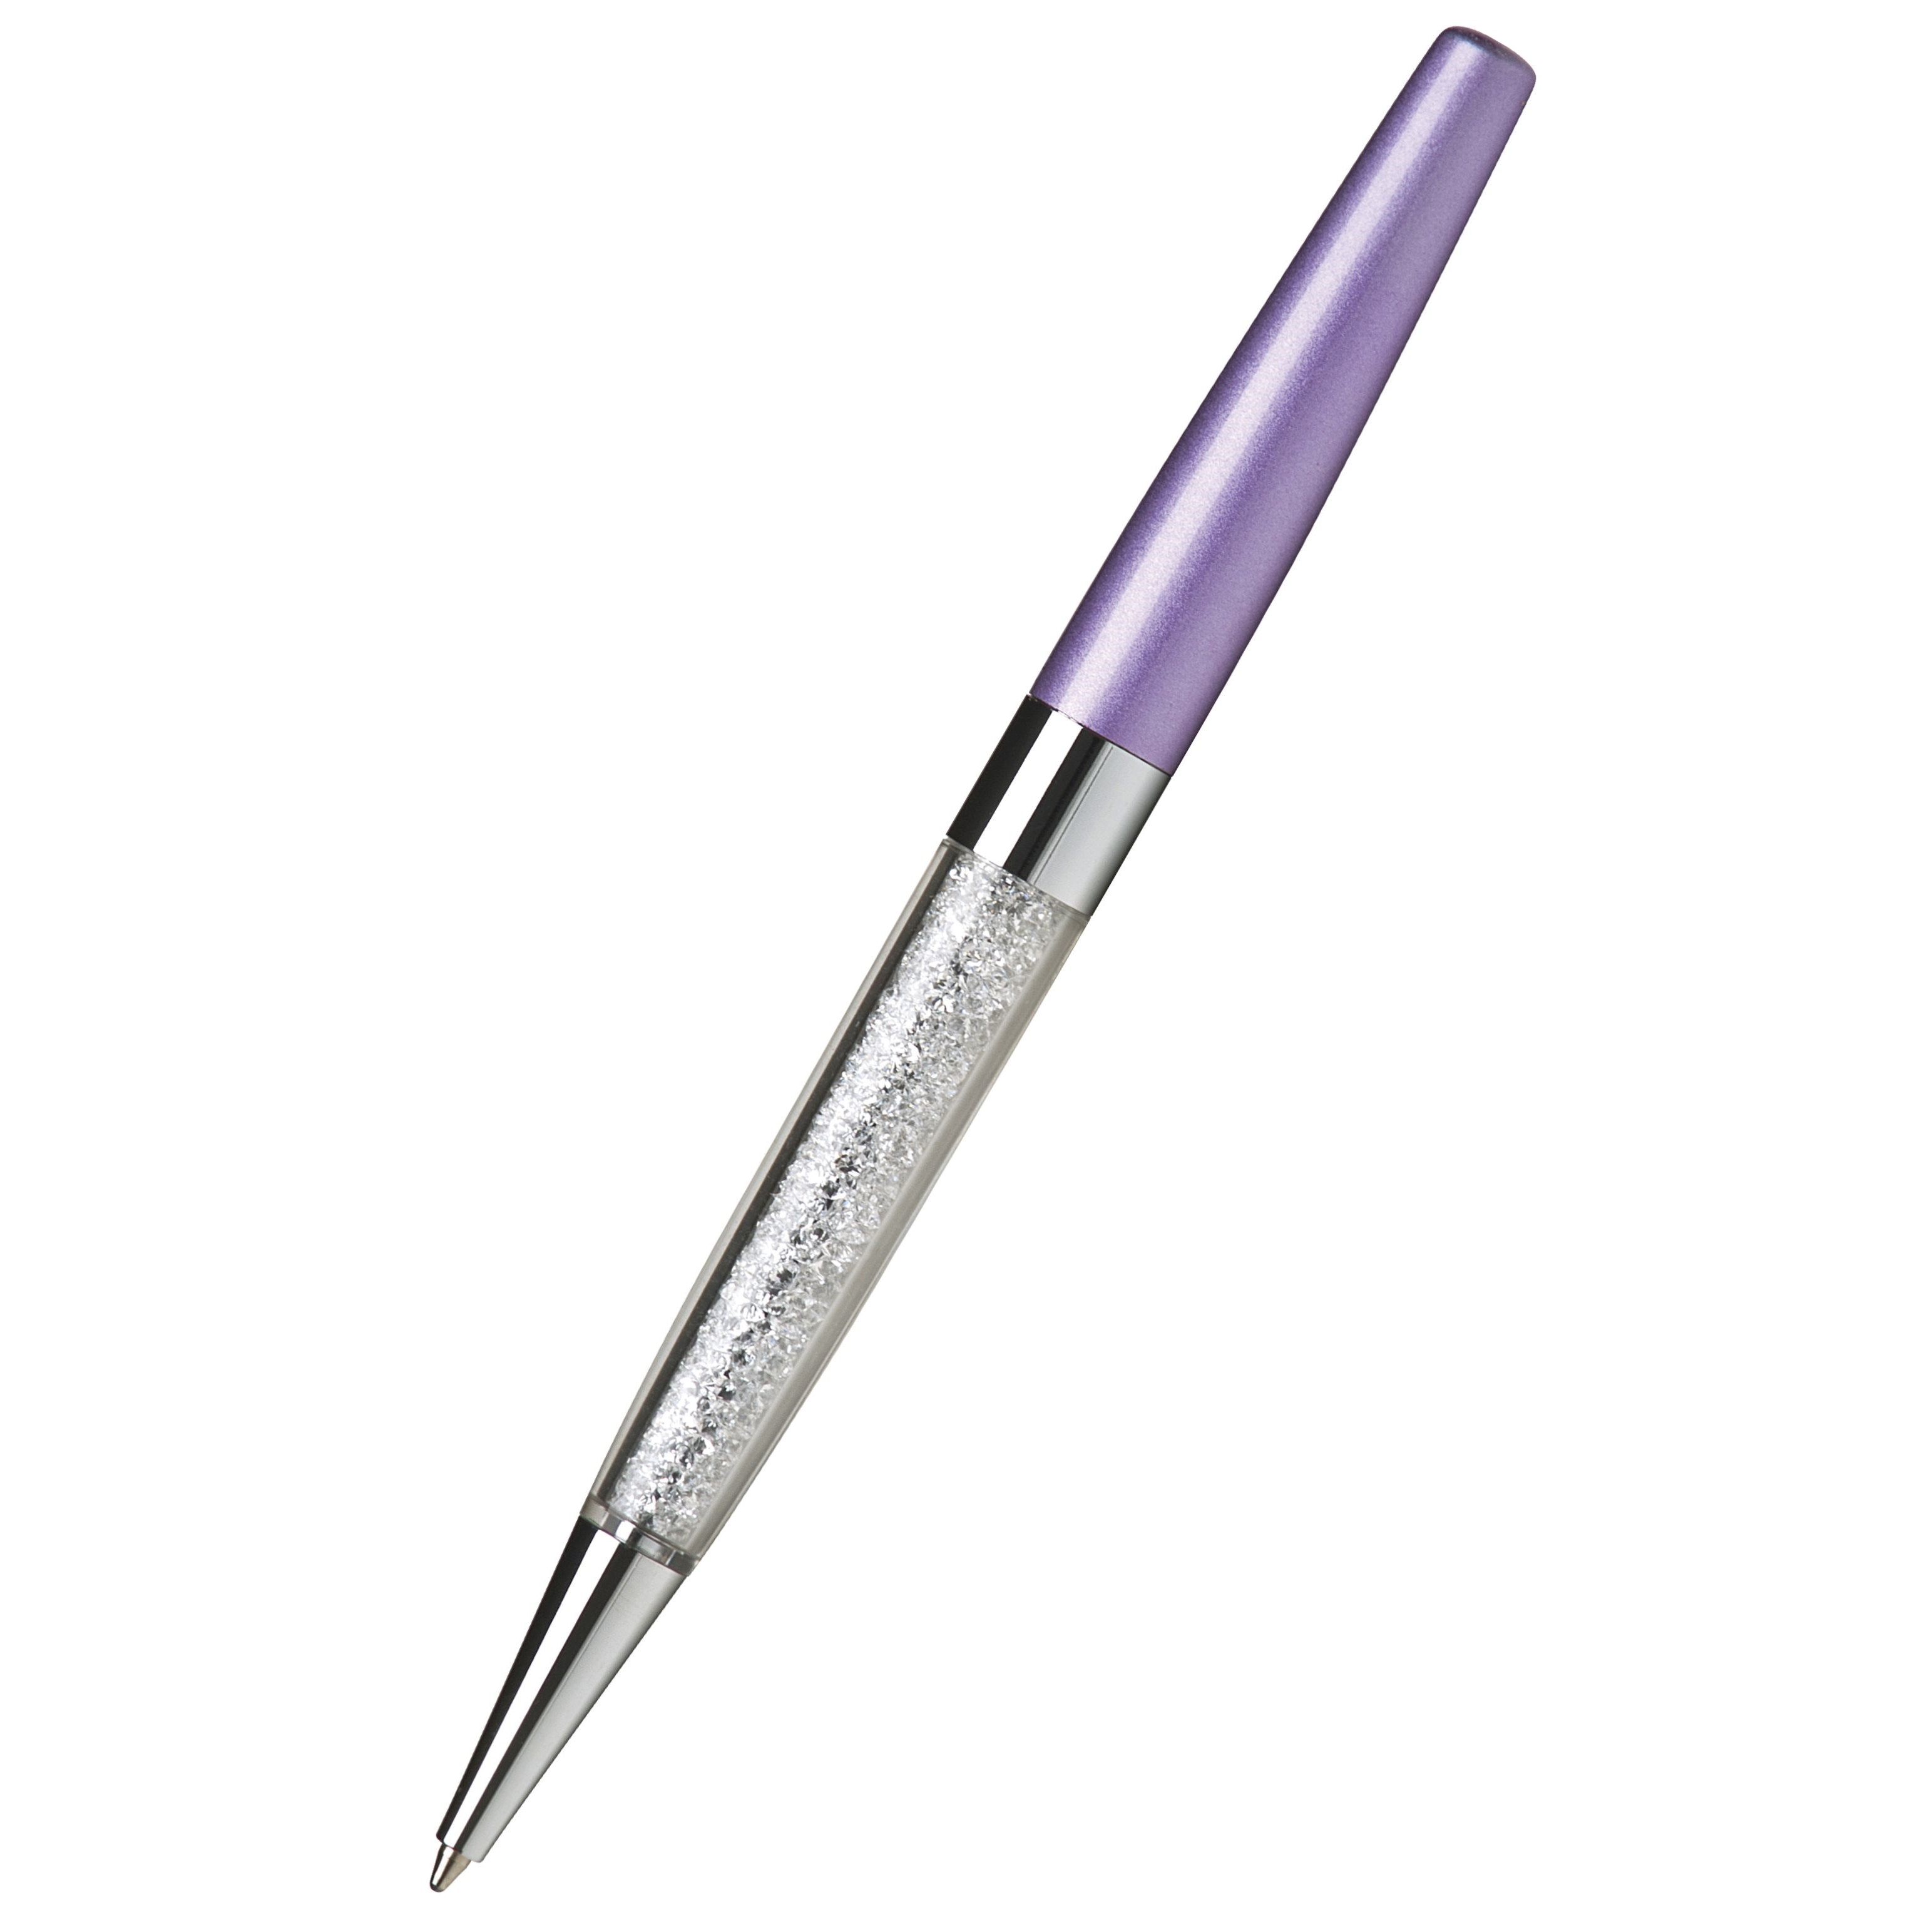 Kuličkové pero Art Crystella, s bílými krystaly Swarovski, pastelově fialová